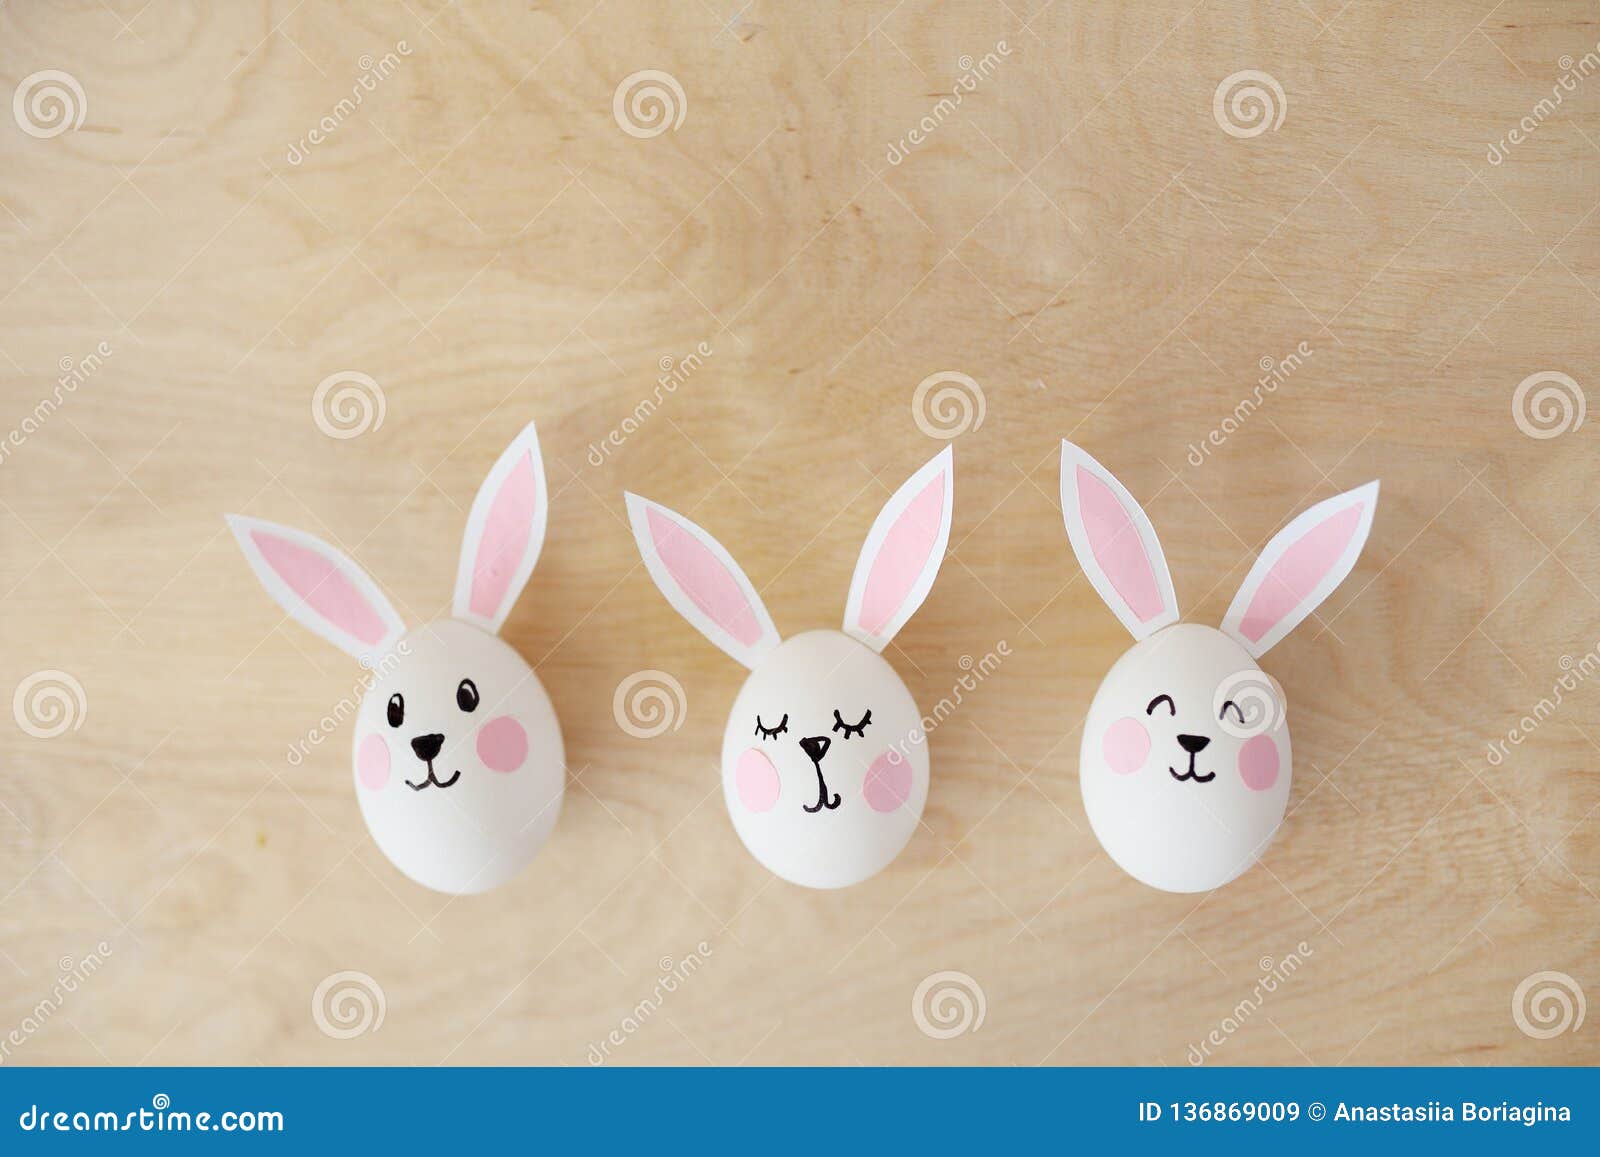 Huevos Con Los Oídos De Conejos, En Una Imagen De Conejos de archivo Imagen de celebre, regalo: 136869009